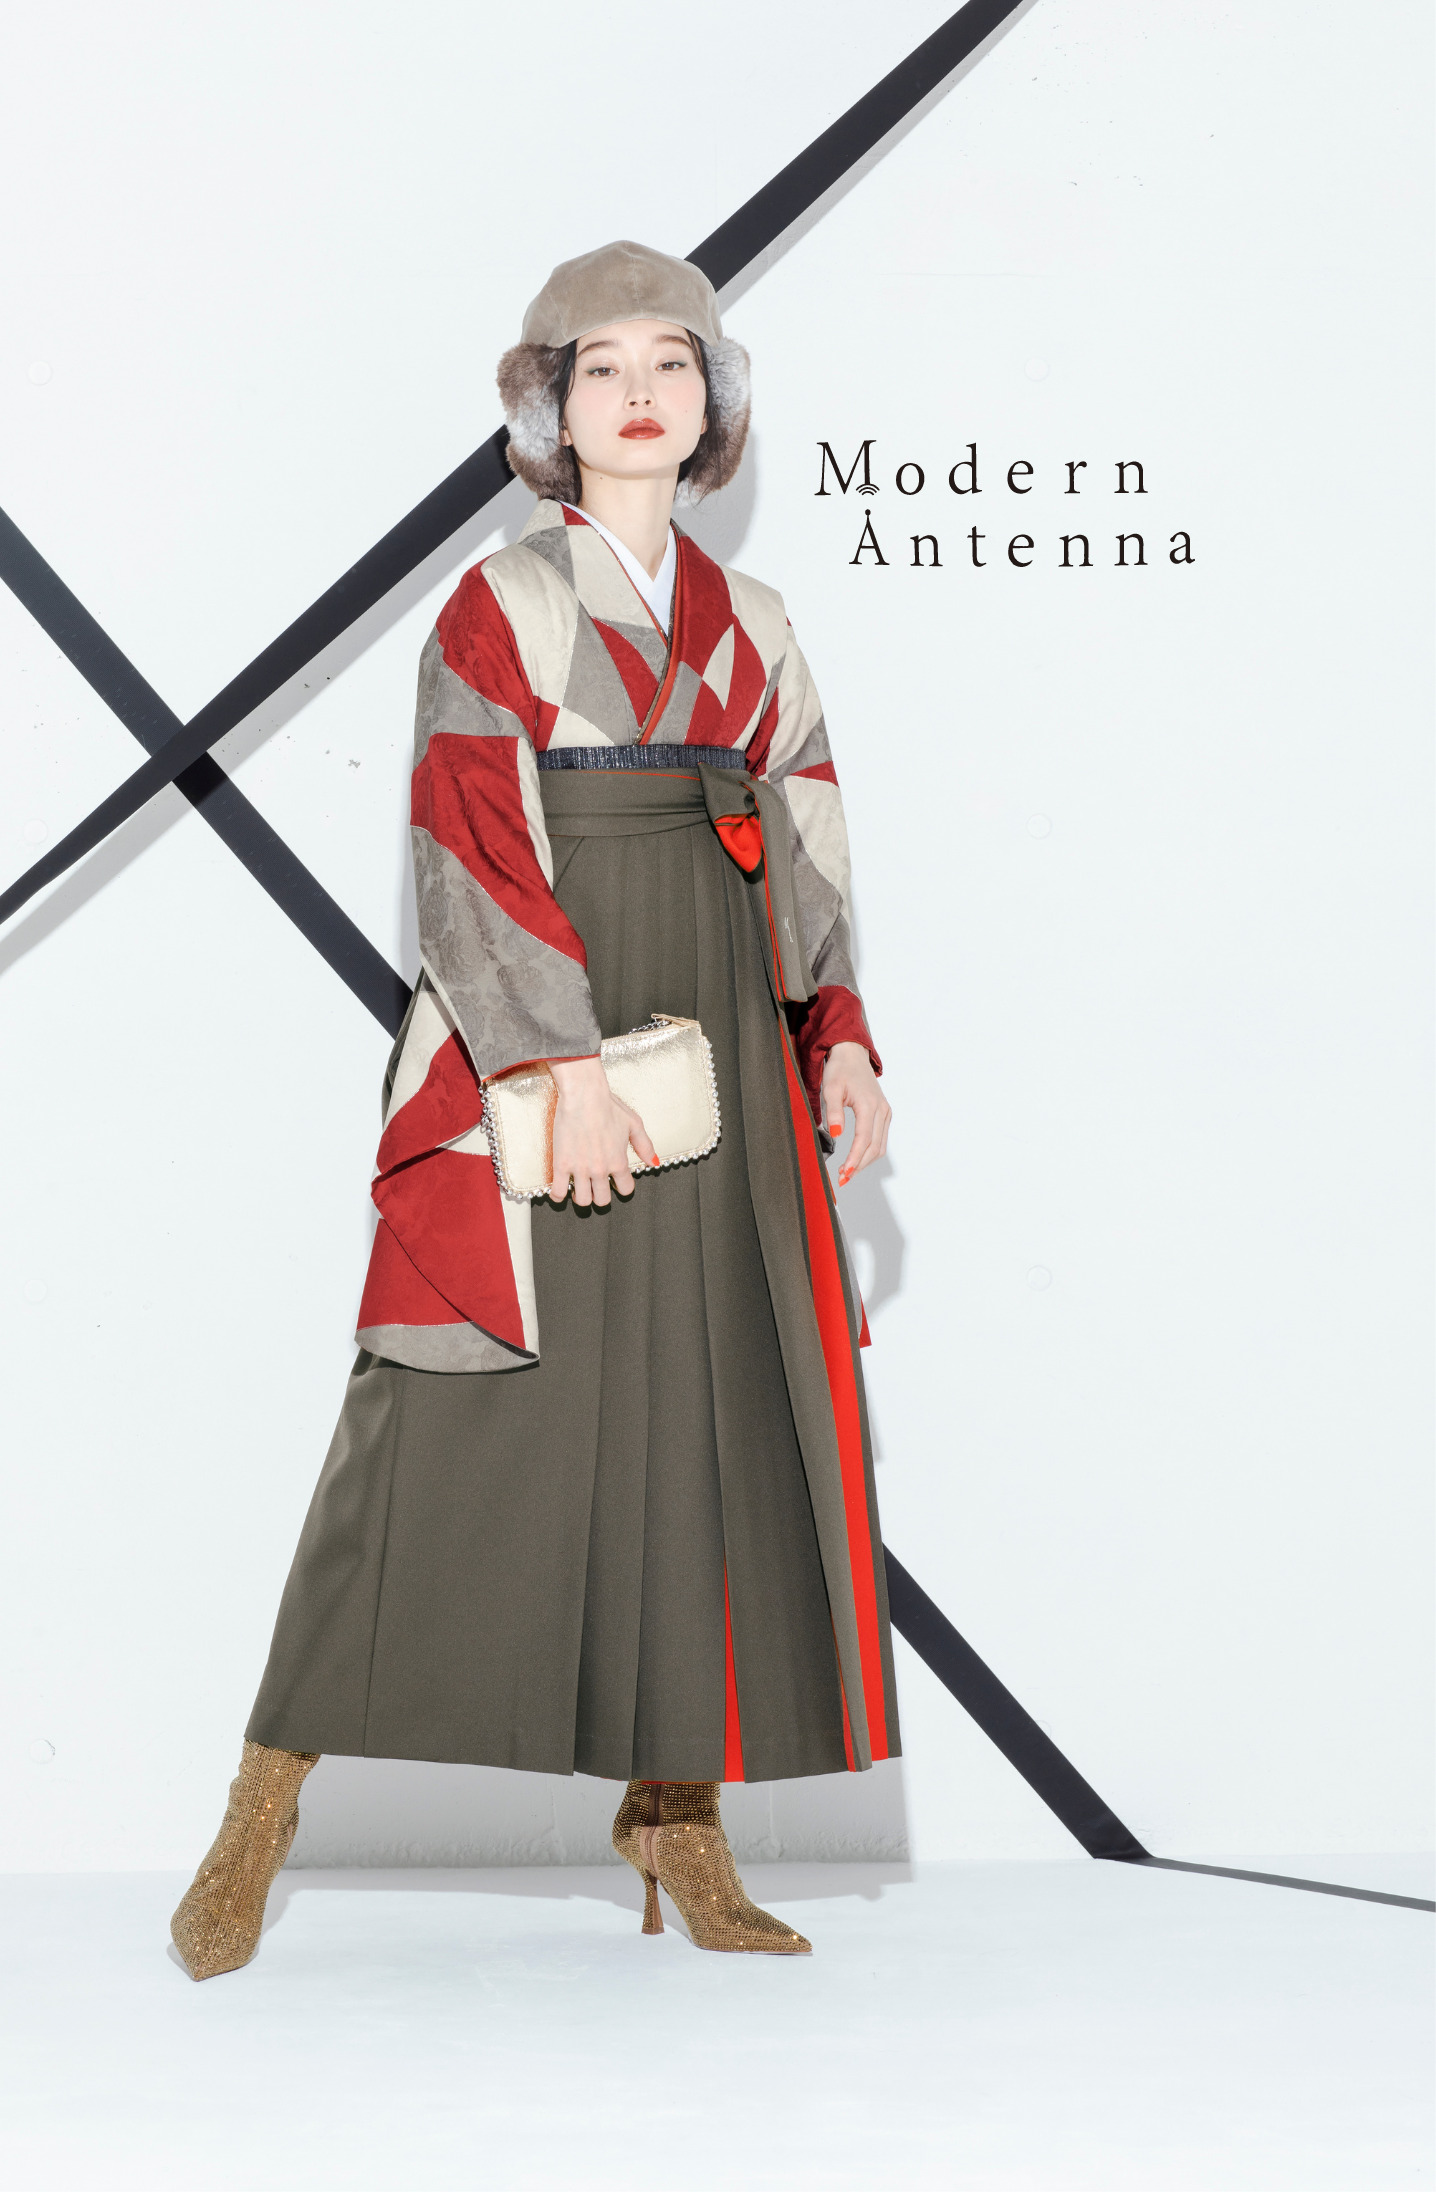 モダンアンテナ（Modern Antenna）ブランドの、赤の幾何学模様の二尺袖と、グレーと赤の袴の女性用卒業式袴を着用した全身写真